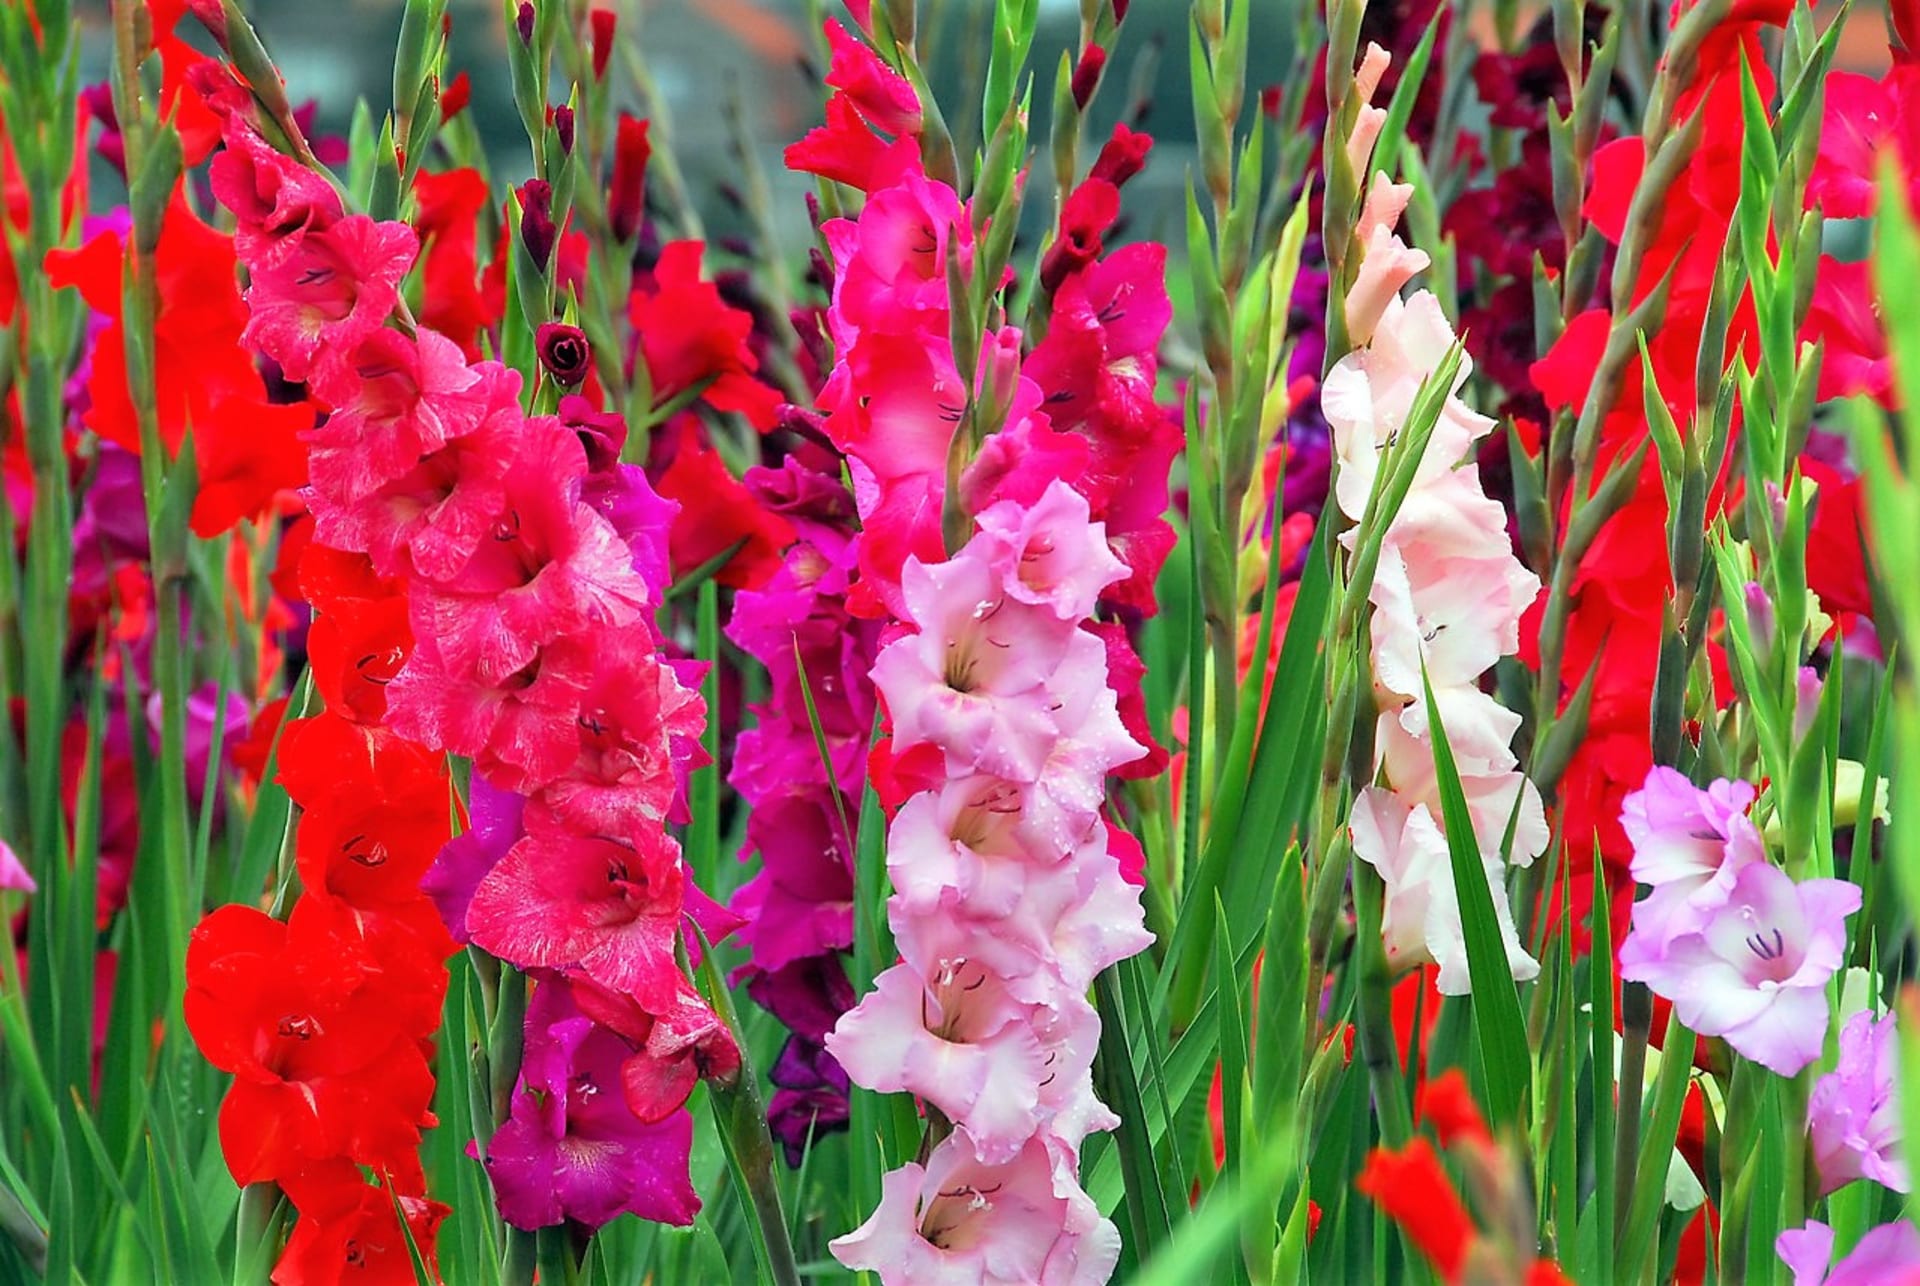 Šest nejkrásnějších letních cibulovin: Gladioly, česky mečíky (Gladiolus) jsou oblíbené rostliny s nádhernými květy, které vyniknou na letních záhonech a v nádobách, navíc dlouho vydrží ve váze